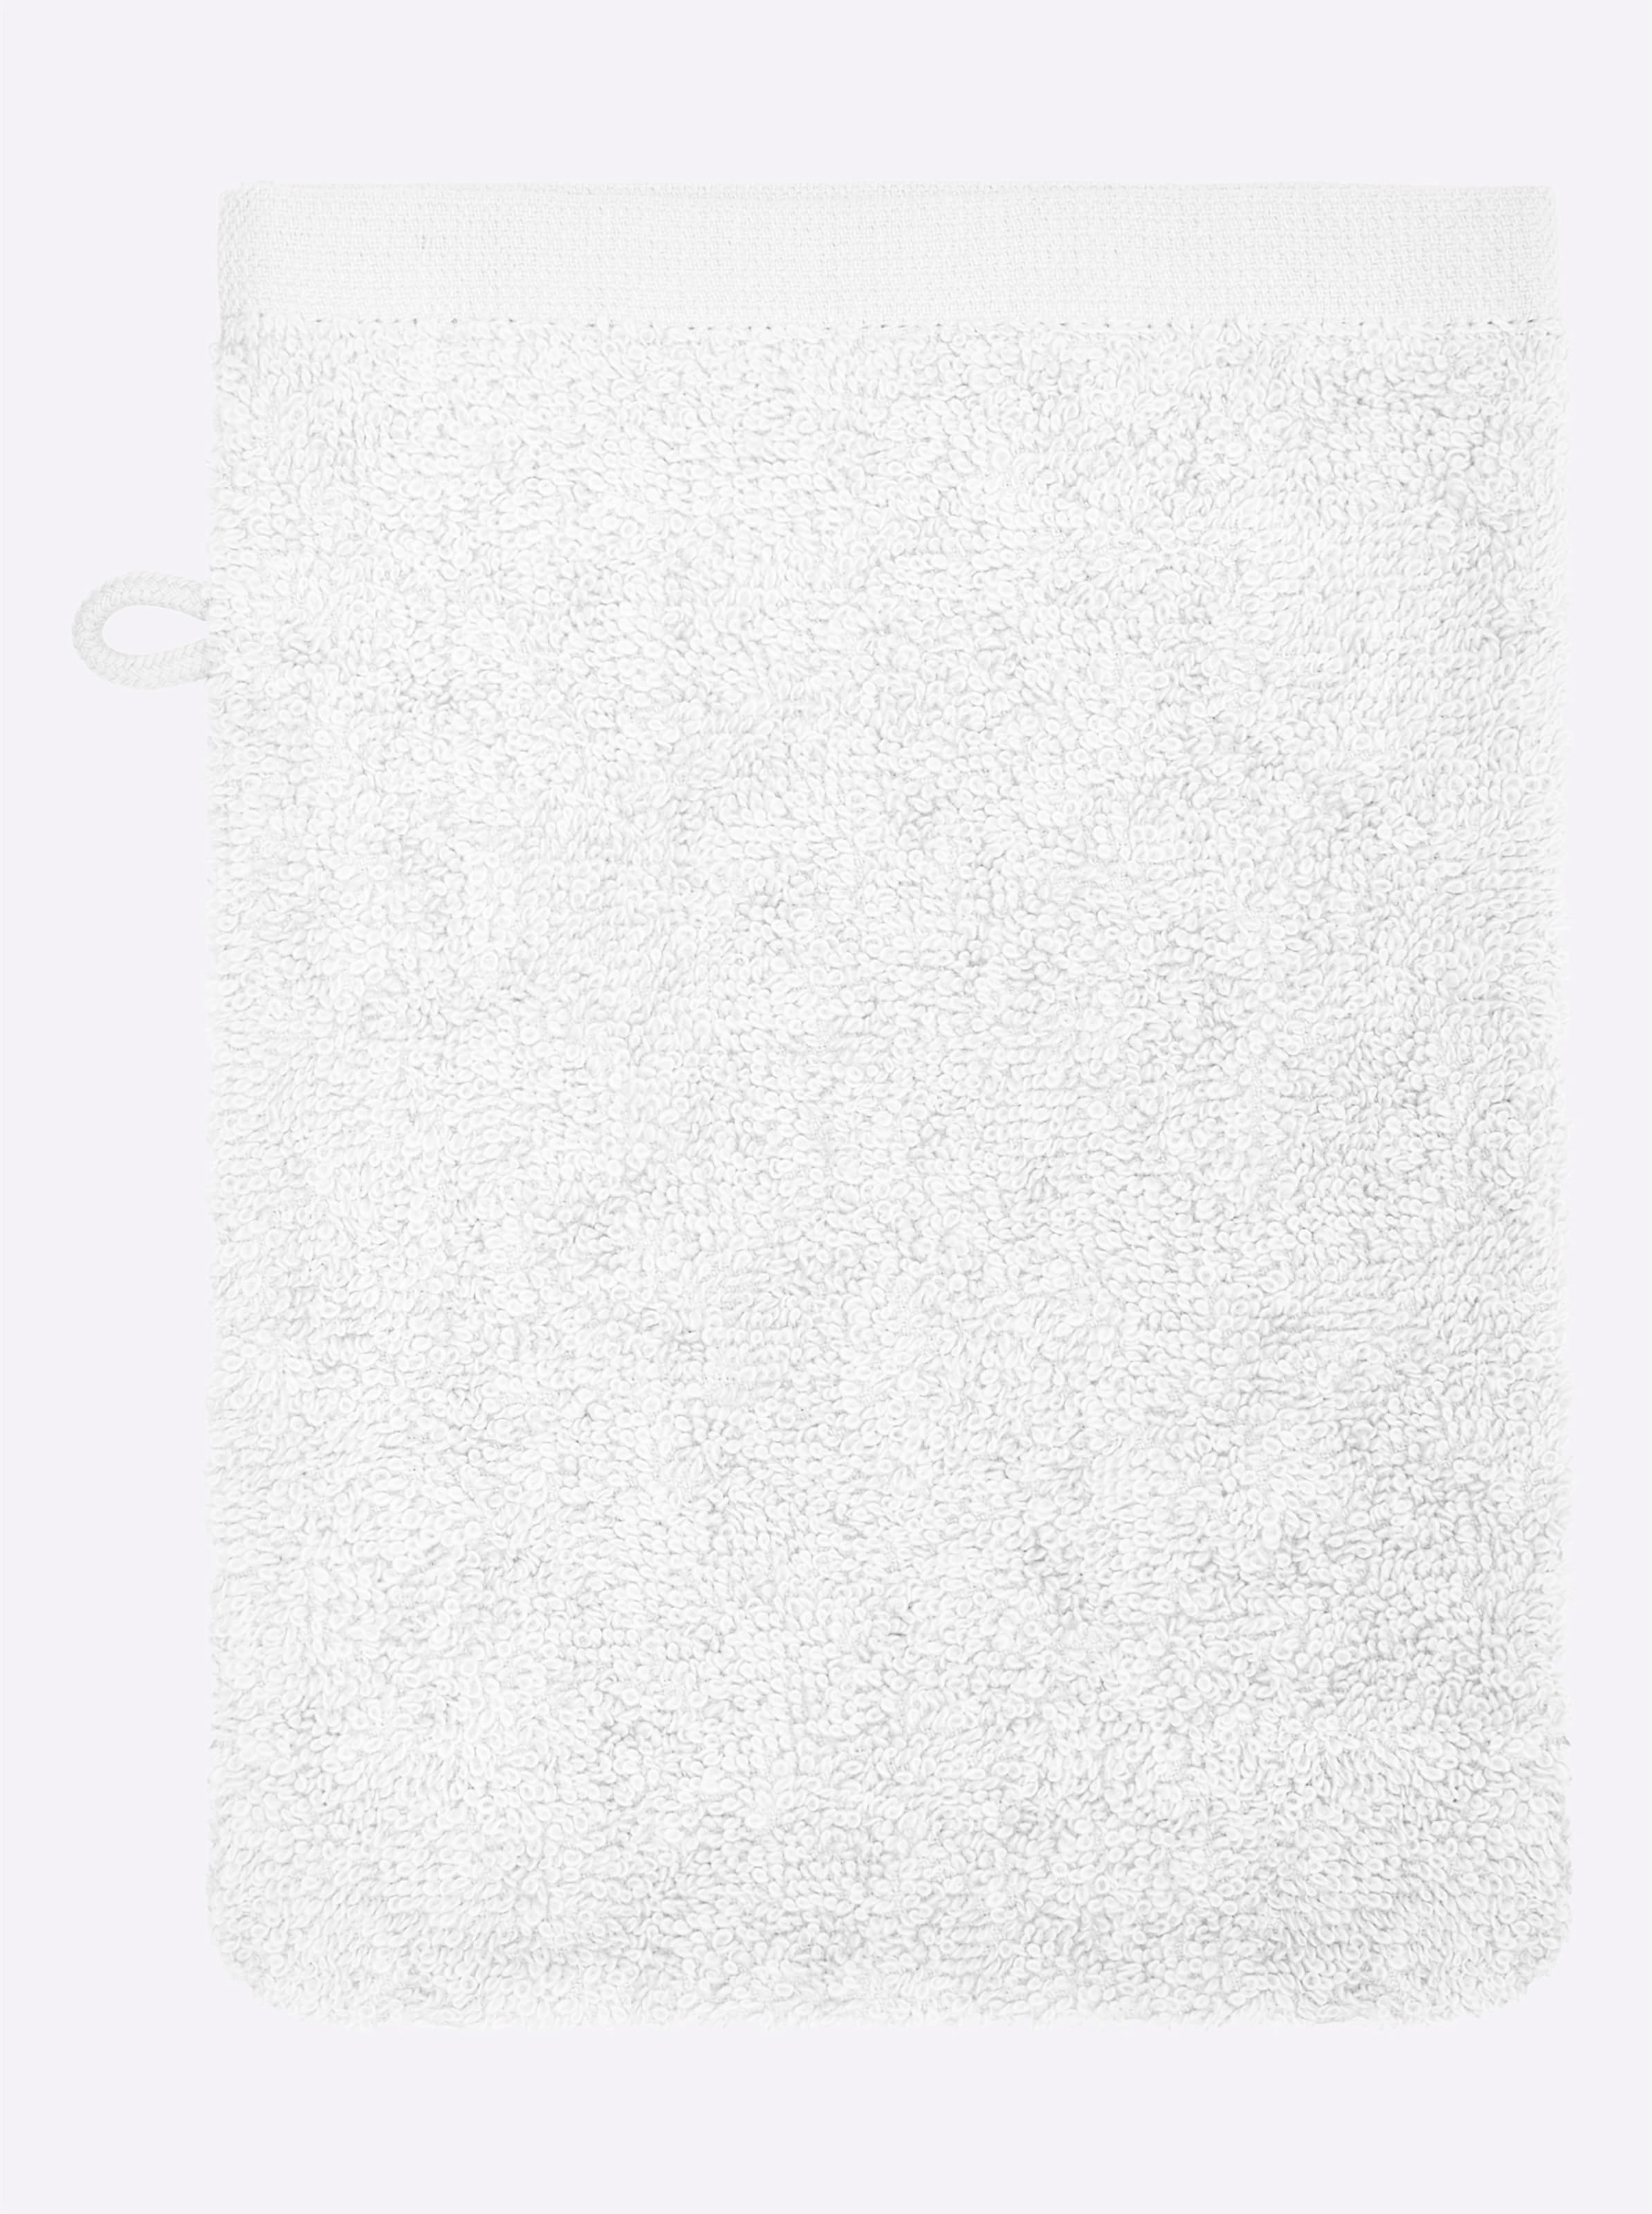 Name und günstig Kaufen-Handtuch in weiß von wäschepur. Handtuch in weiß von wäschepur <![CDATA[Das ornamentale Dessin lässt dieses Handtuch-Programm sehr edel wirken! Wunderbar weicher Walkfrottier in Luxus-Qualität. Unterstützt die Initiative Cotton made